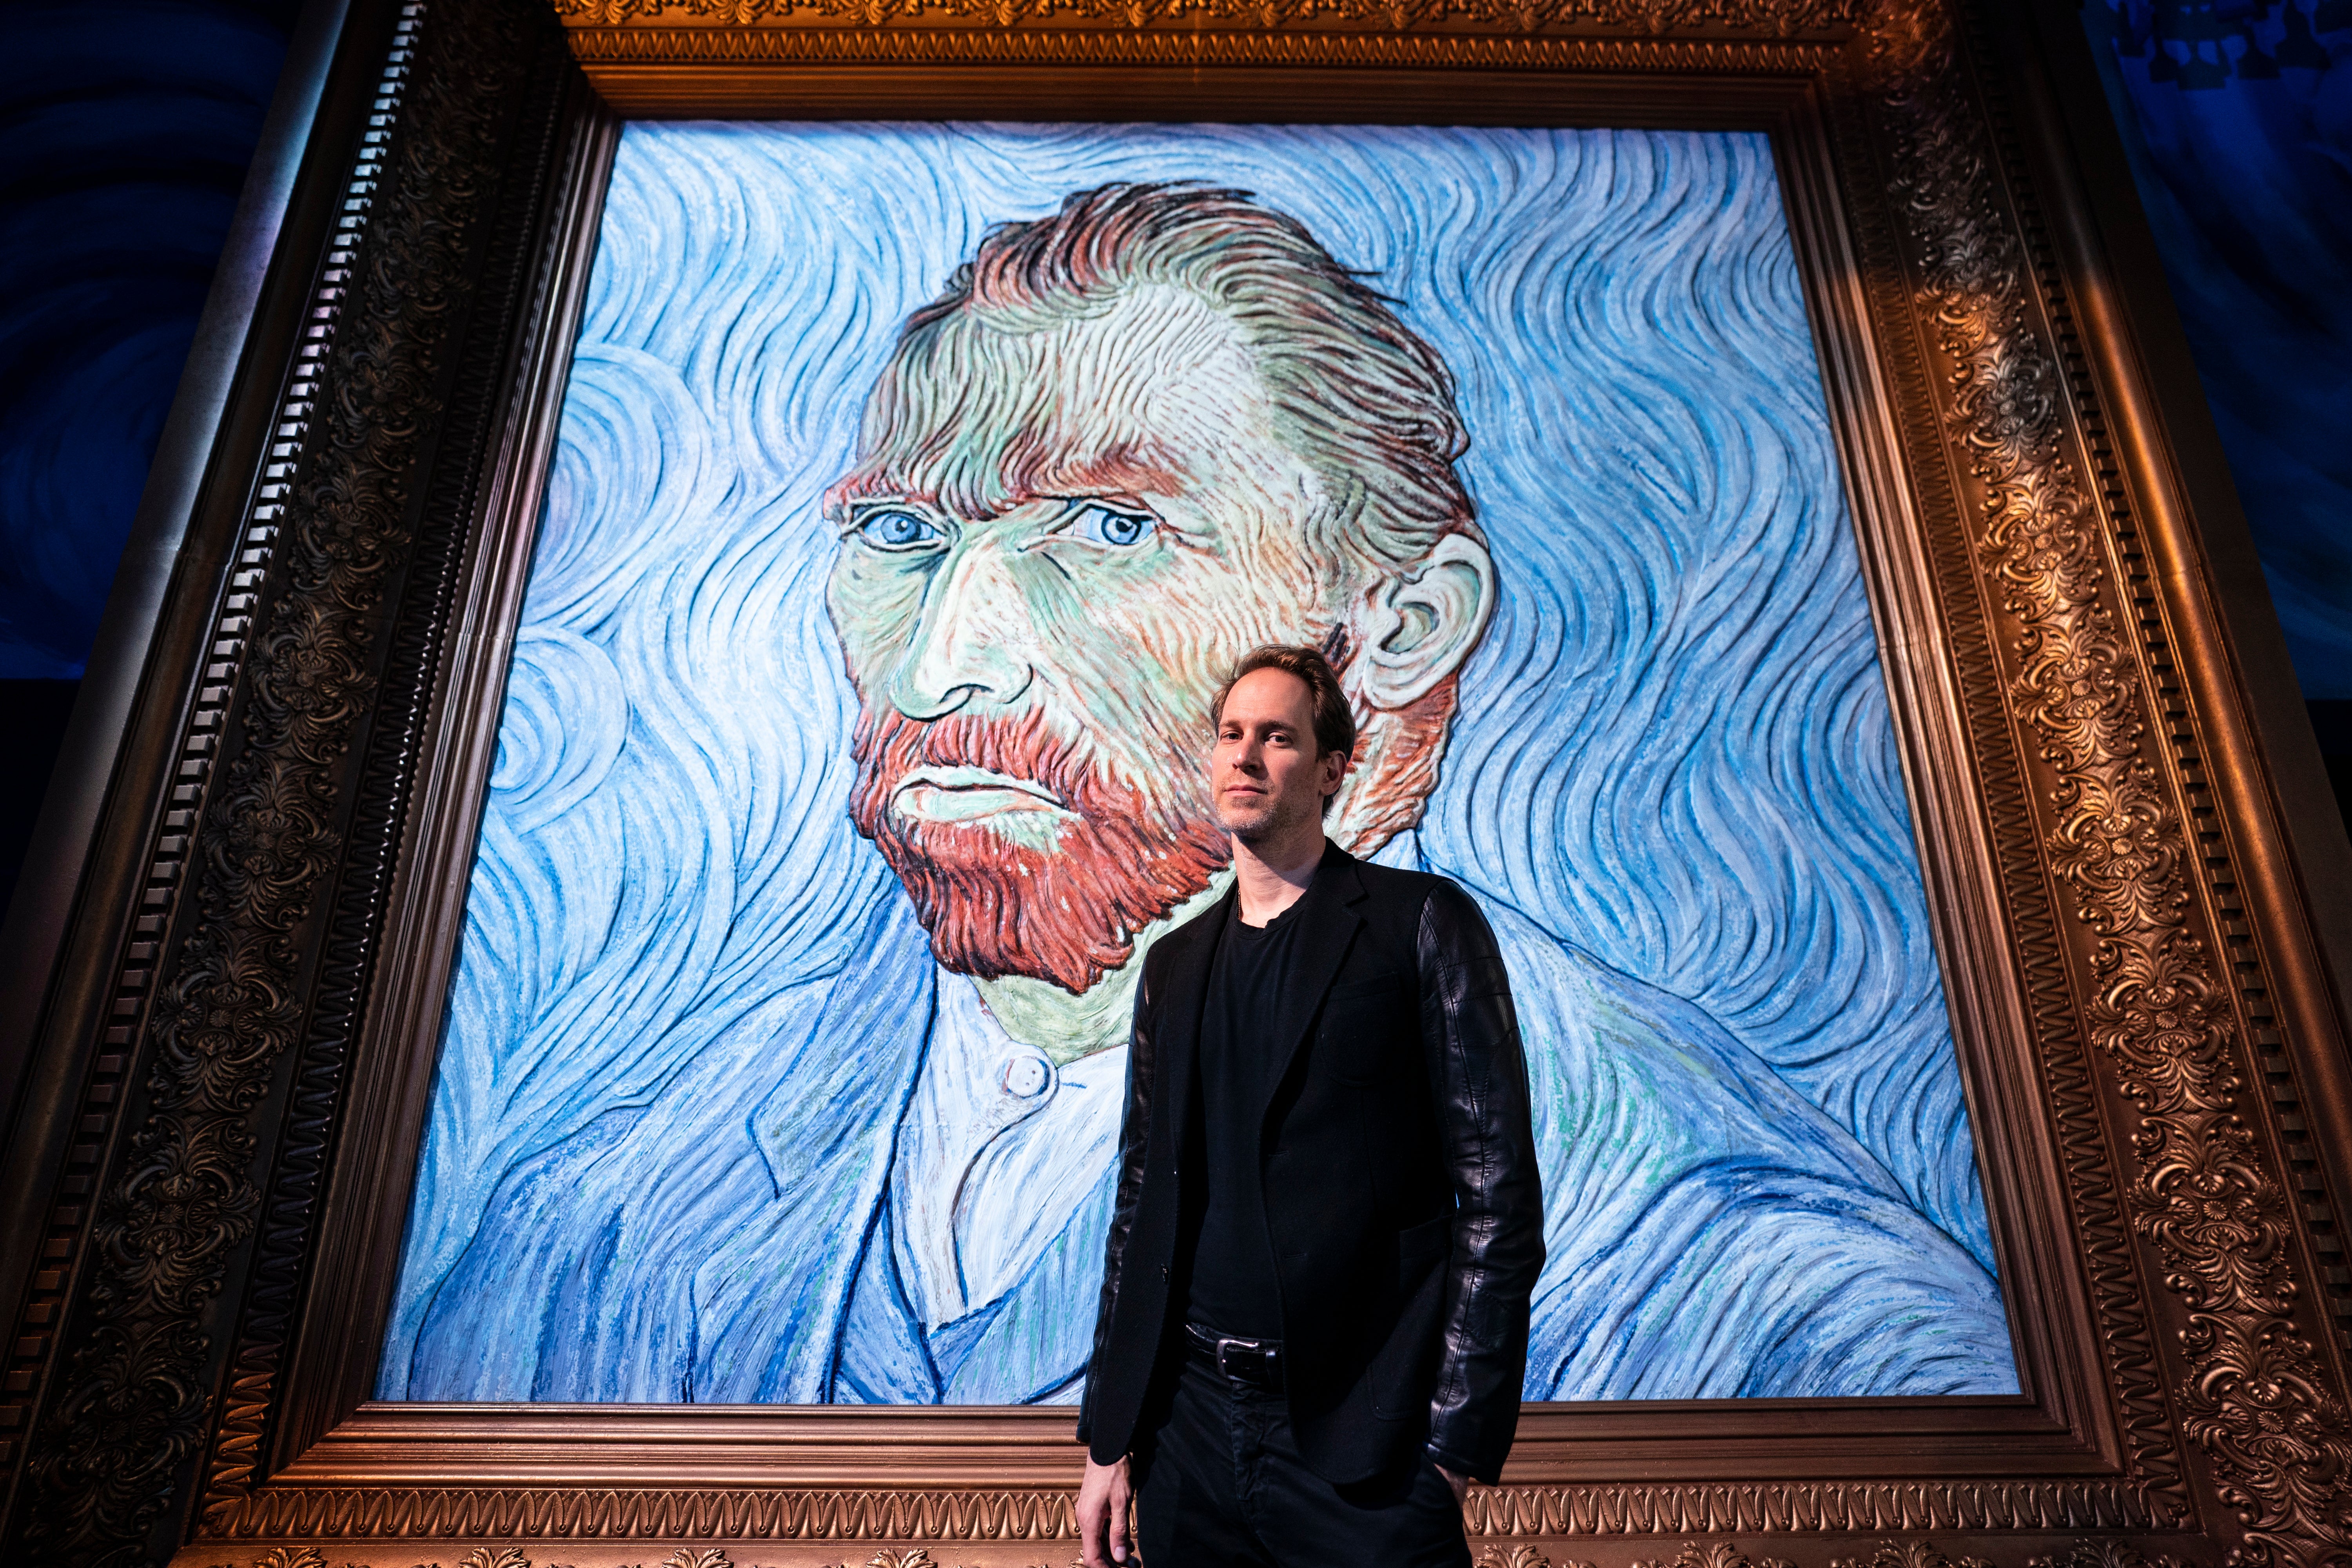 Immersive Van Gogh Exhibit